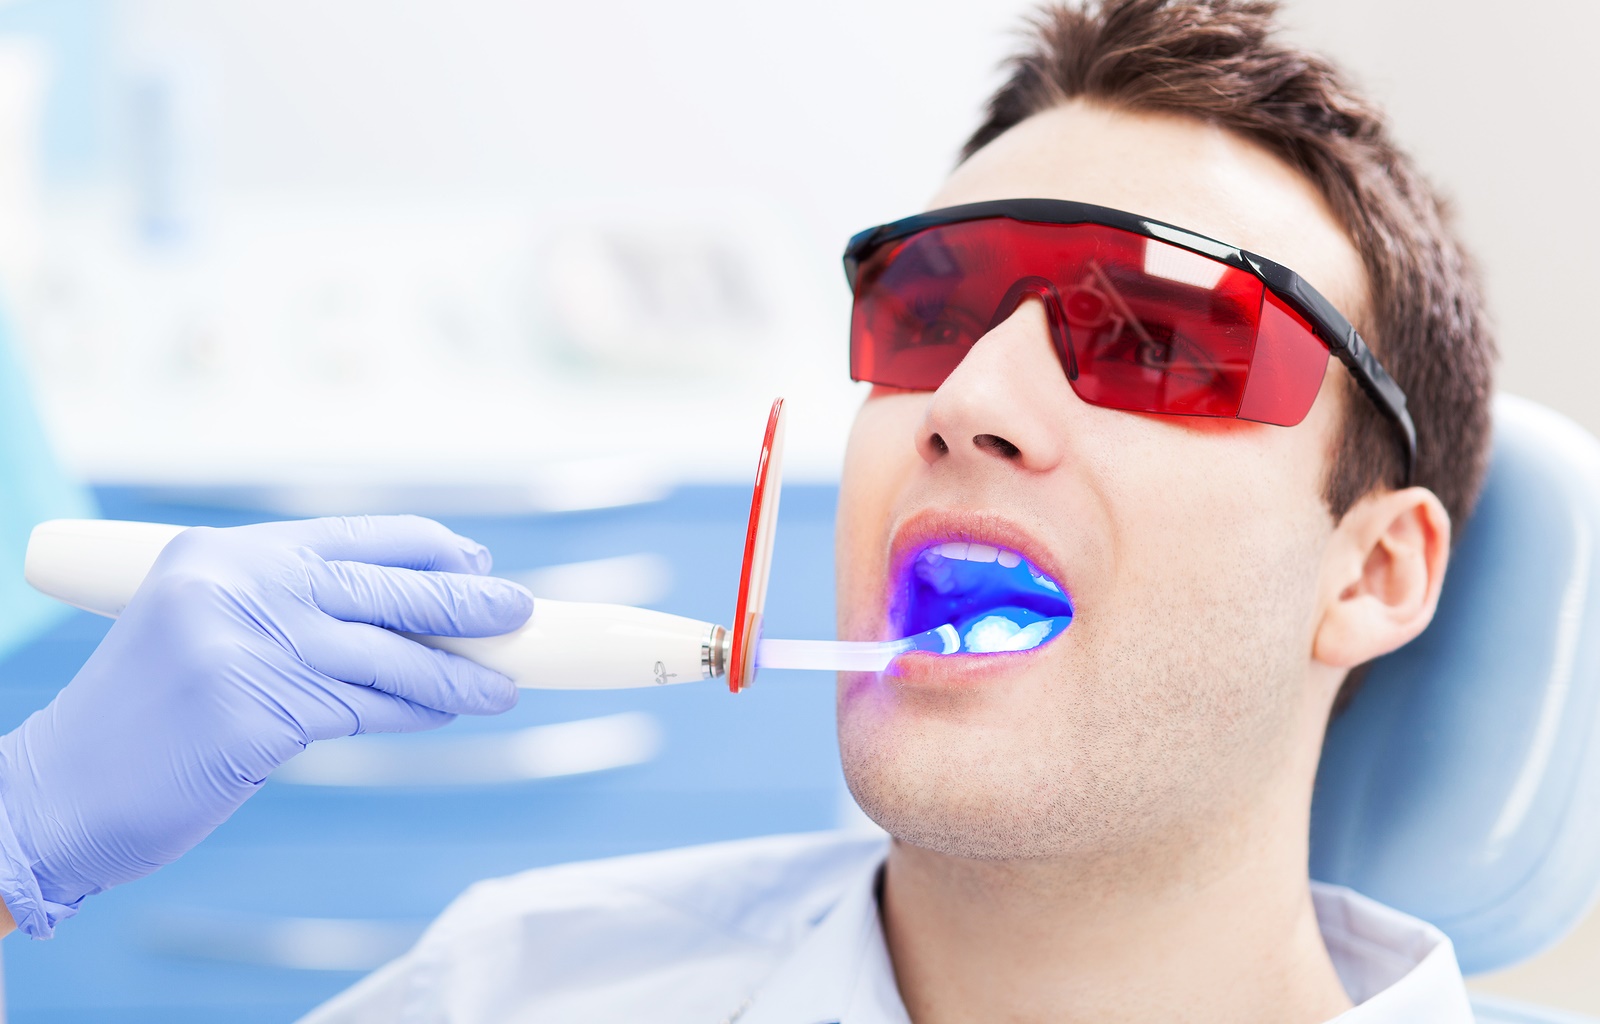 Dentist ultraviolet light equipment